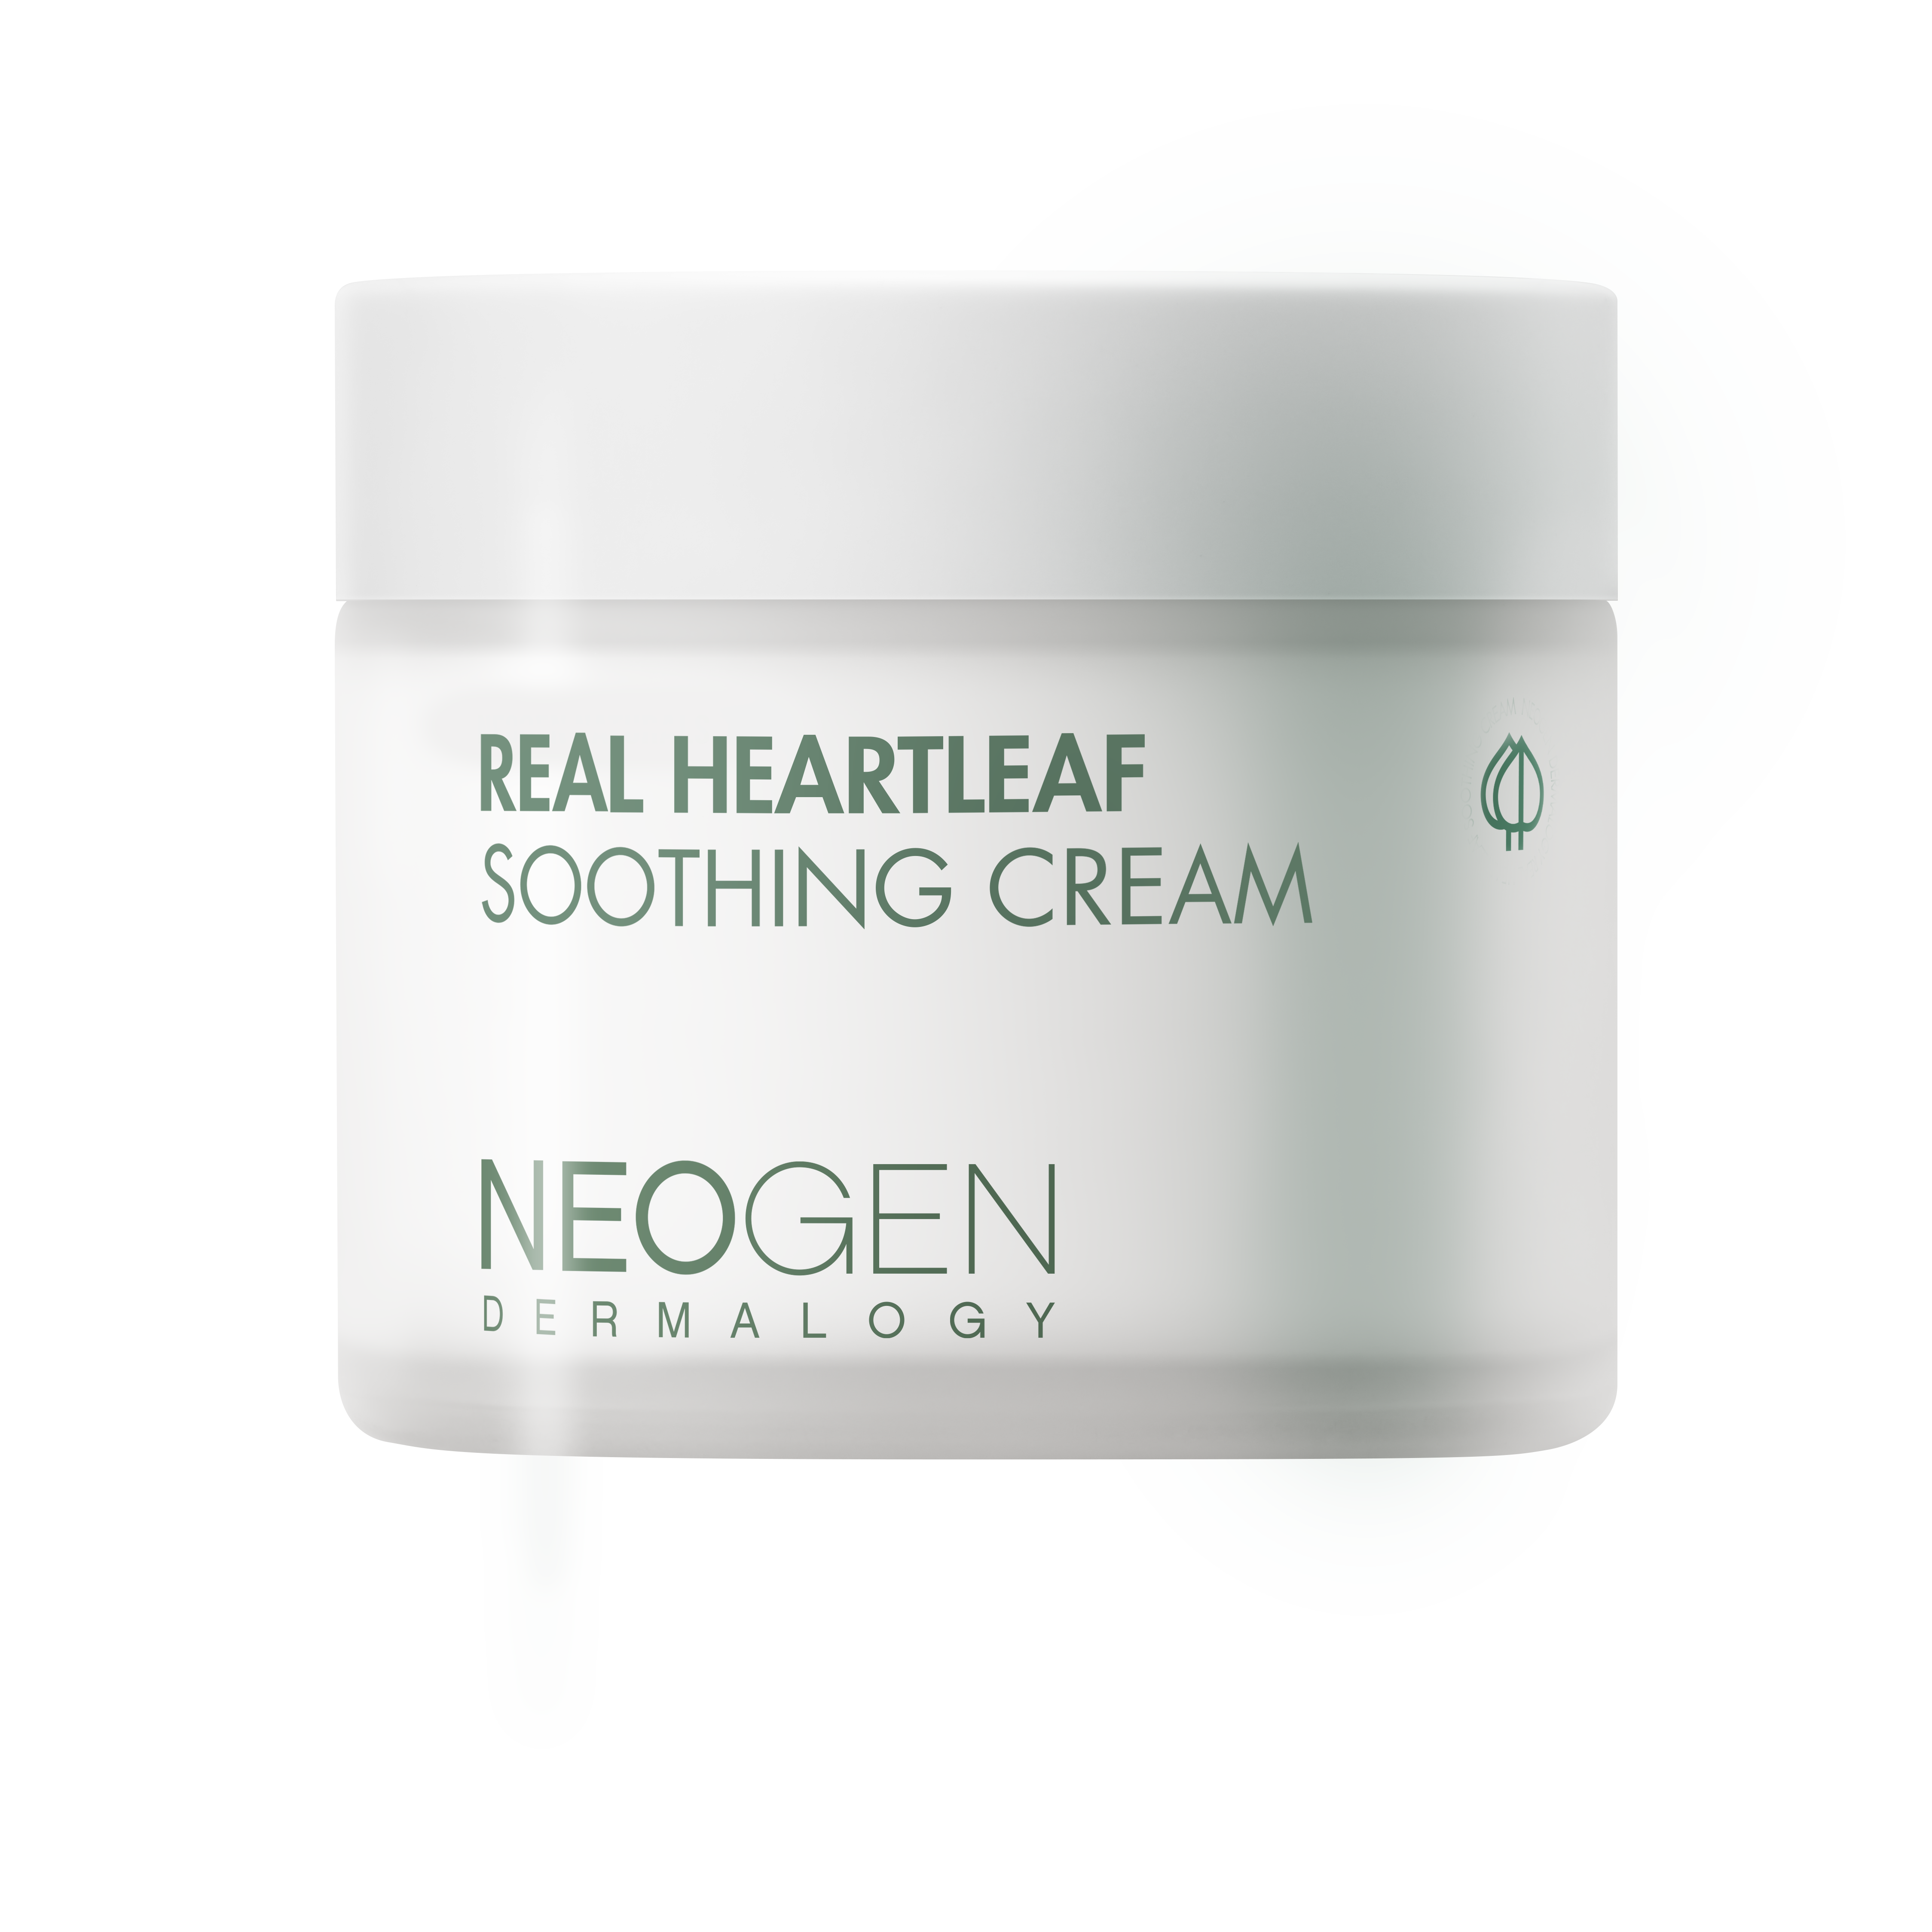 Heartleaf Full Set (Real Fresh Foam Heartleaf, Real Heartleaf Soothing Essence, Real Heartleaf Soothing Cream + Free gift )